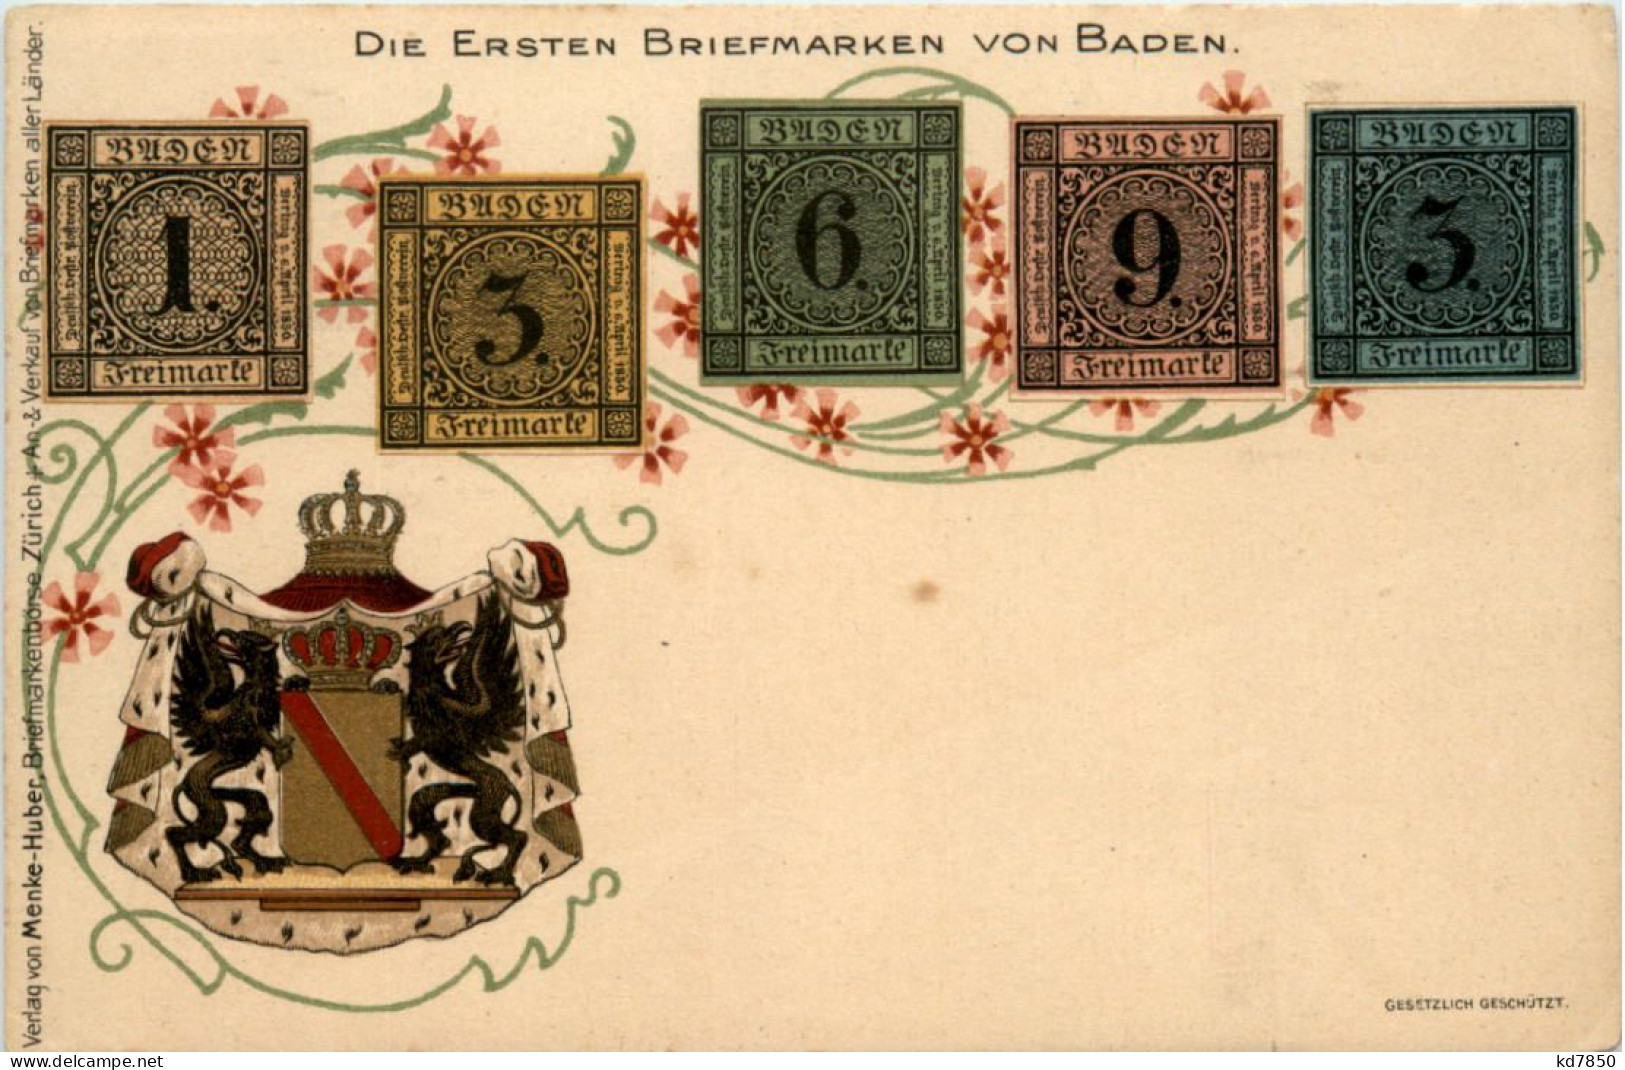 Die Ersten Briefmarken Von Baden - Litho - Stamps (pictures)